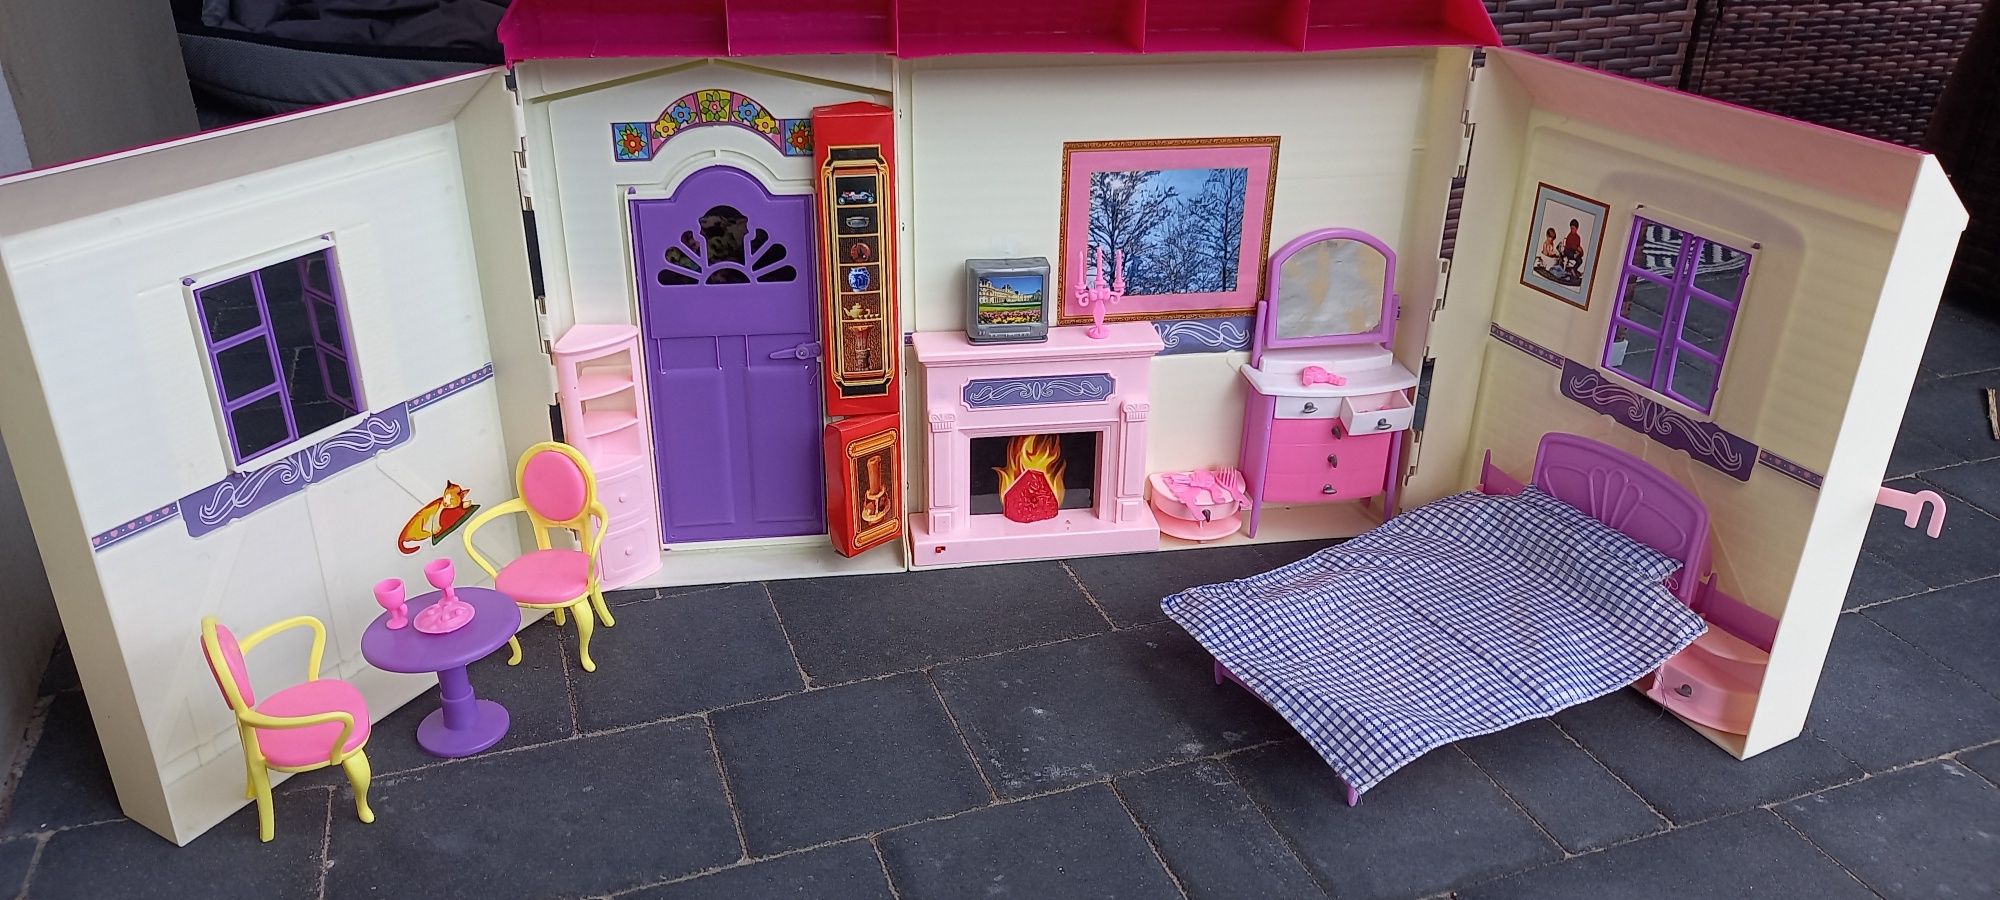 Domek dla lalek z zestawem akcesoriów, mebelków i lalką